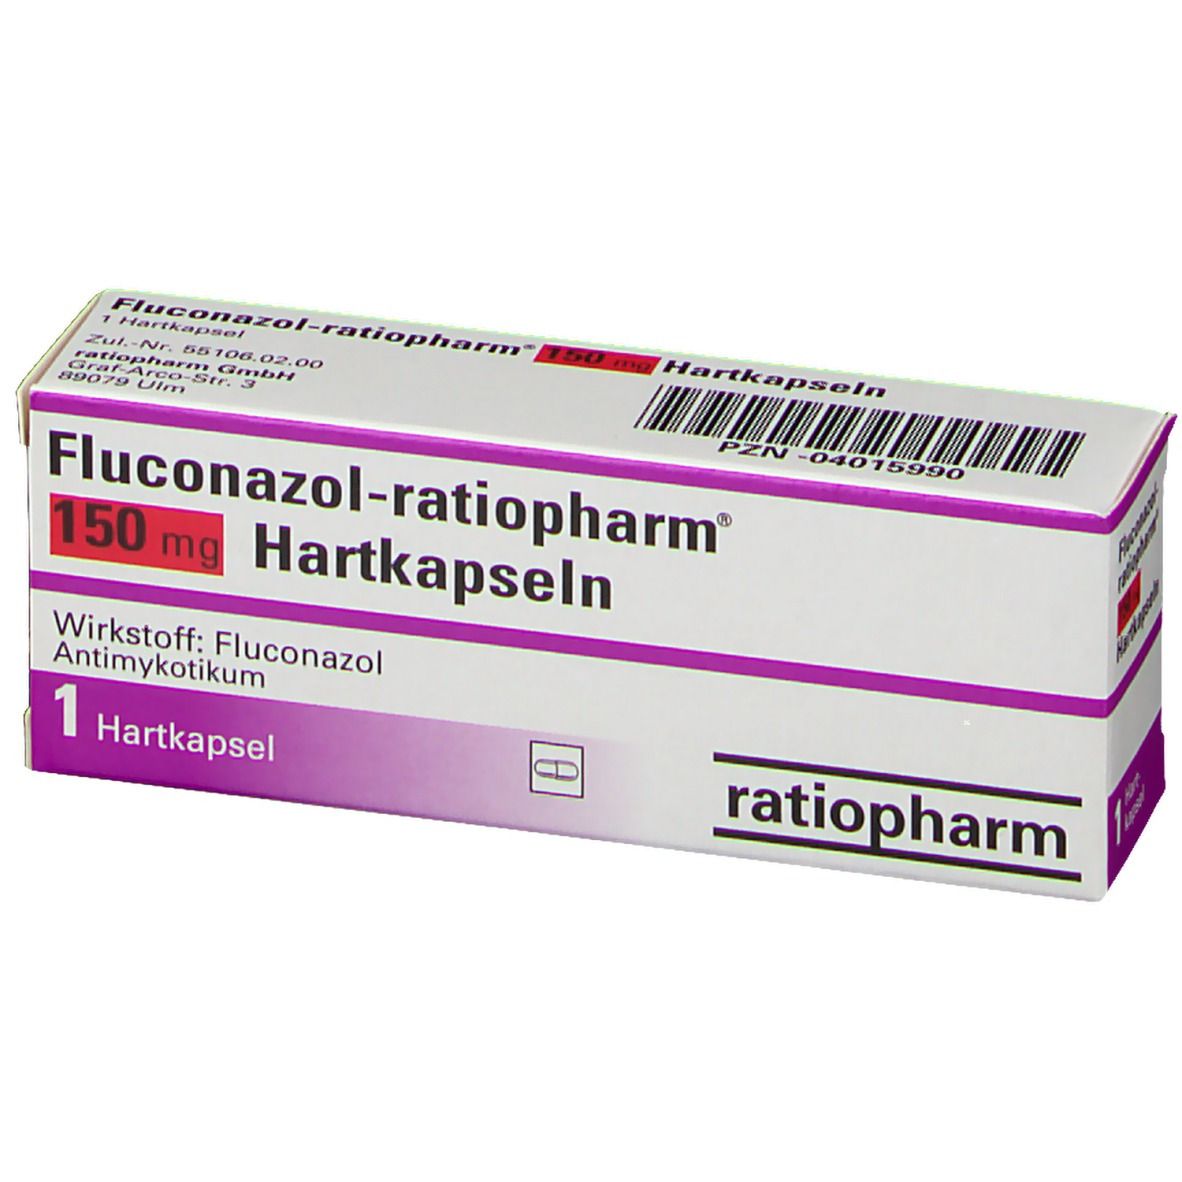 Fluconazol-ratiopharm® 150 mg